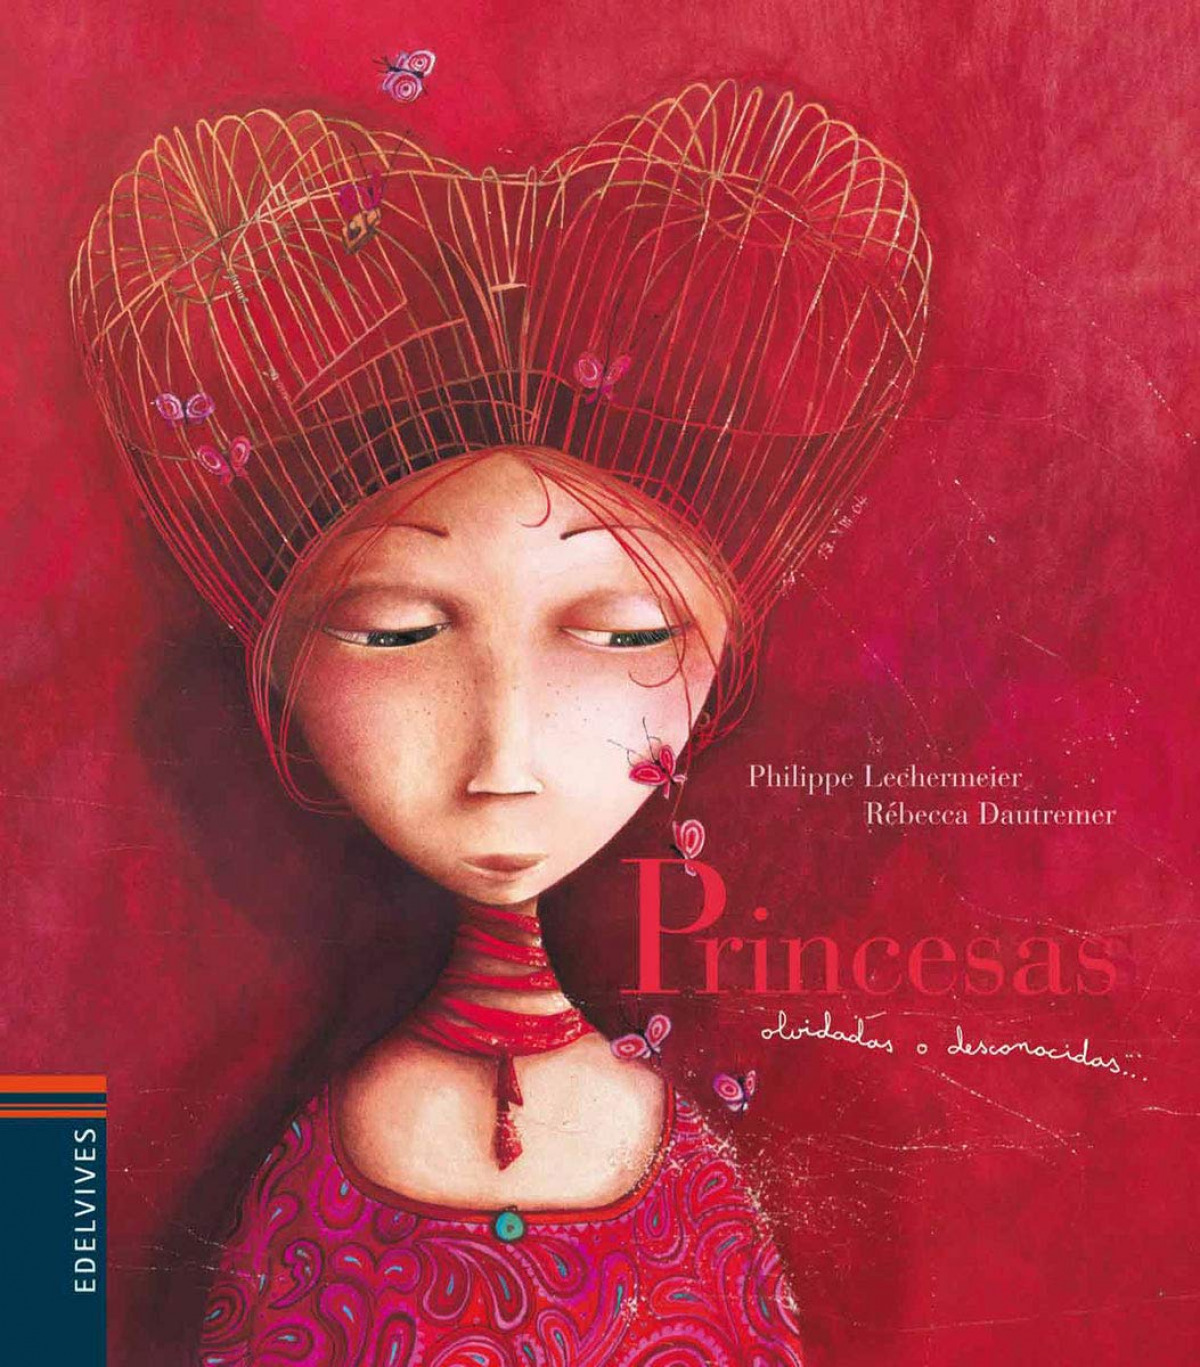 Princesas olvidadas o desconocidas (Edición bolsillo) - Philippe Lechermeier